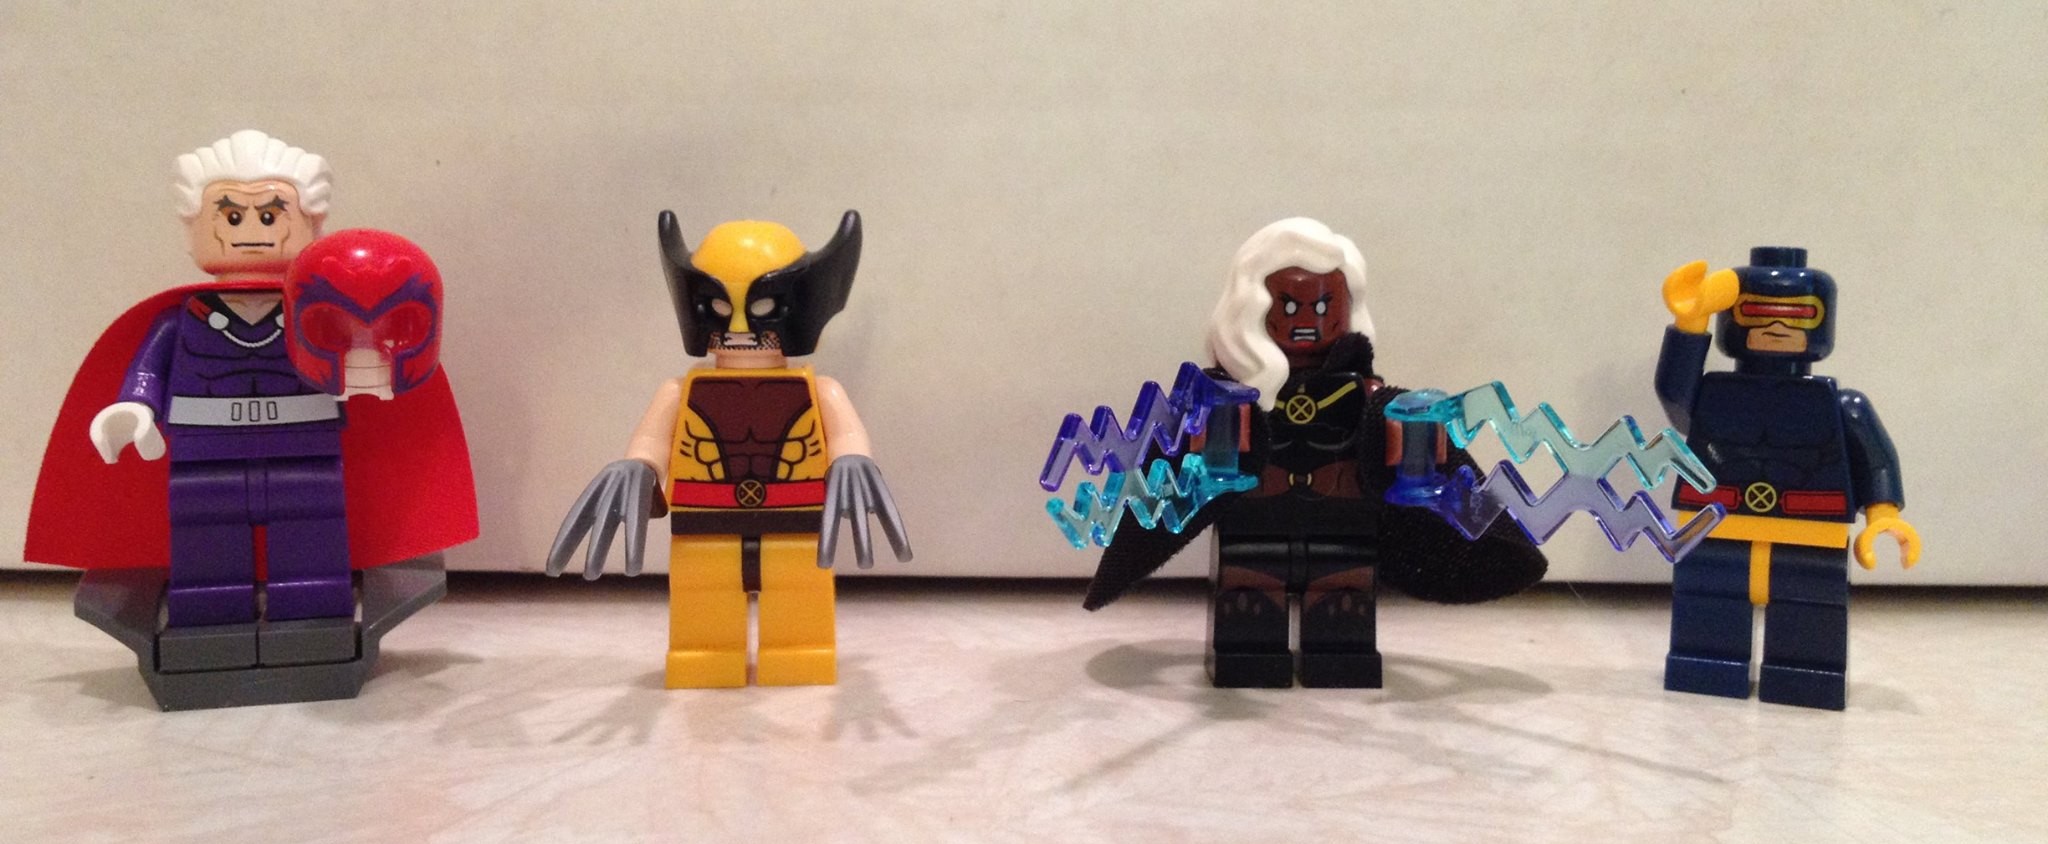 NEW Lego Super Heroes X-Men SENTINEL Mega Minifig 76022 Minifigure XMEN